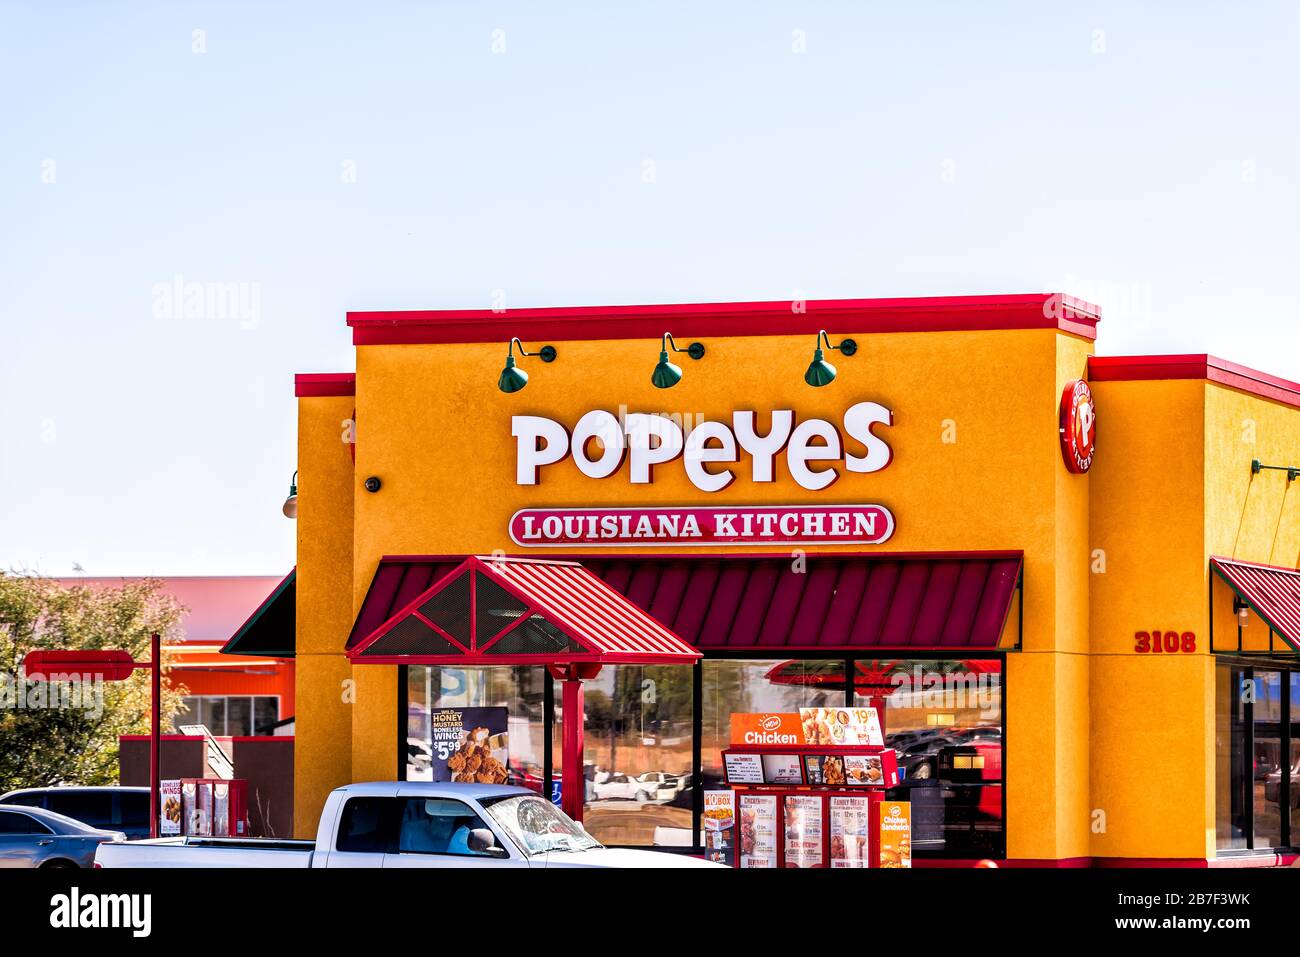 Garden City, États-Unis - 14 octobre 2019: Bâtiment et signe pour Popeyes Louisiana cuisine Fast food poulet frit dans Kansas petite ville industrielle rouge exter Banque D'Images